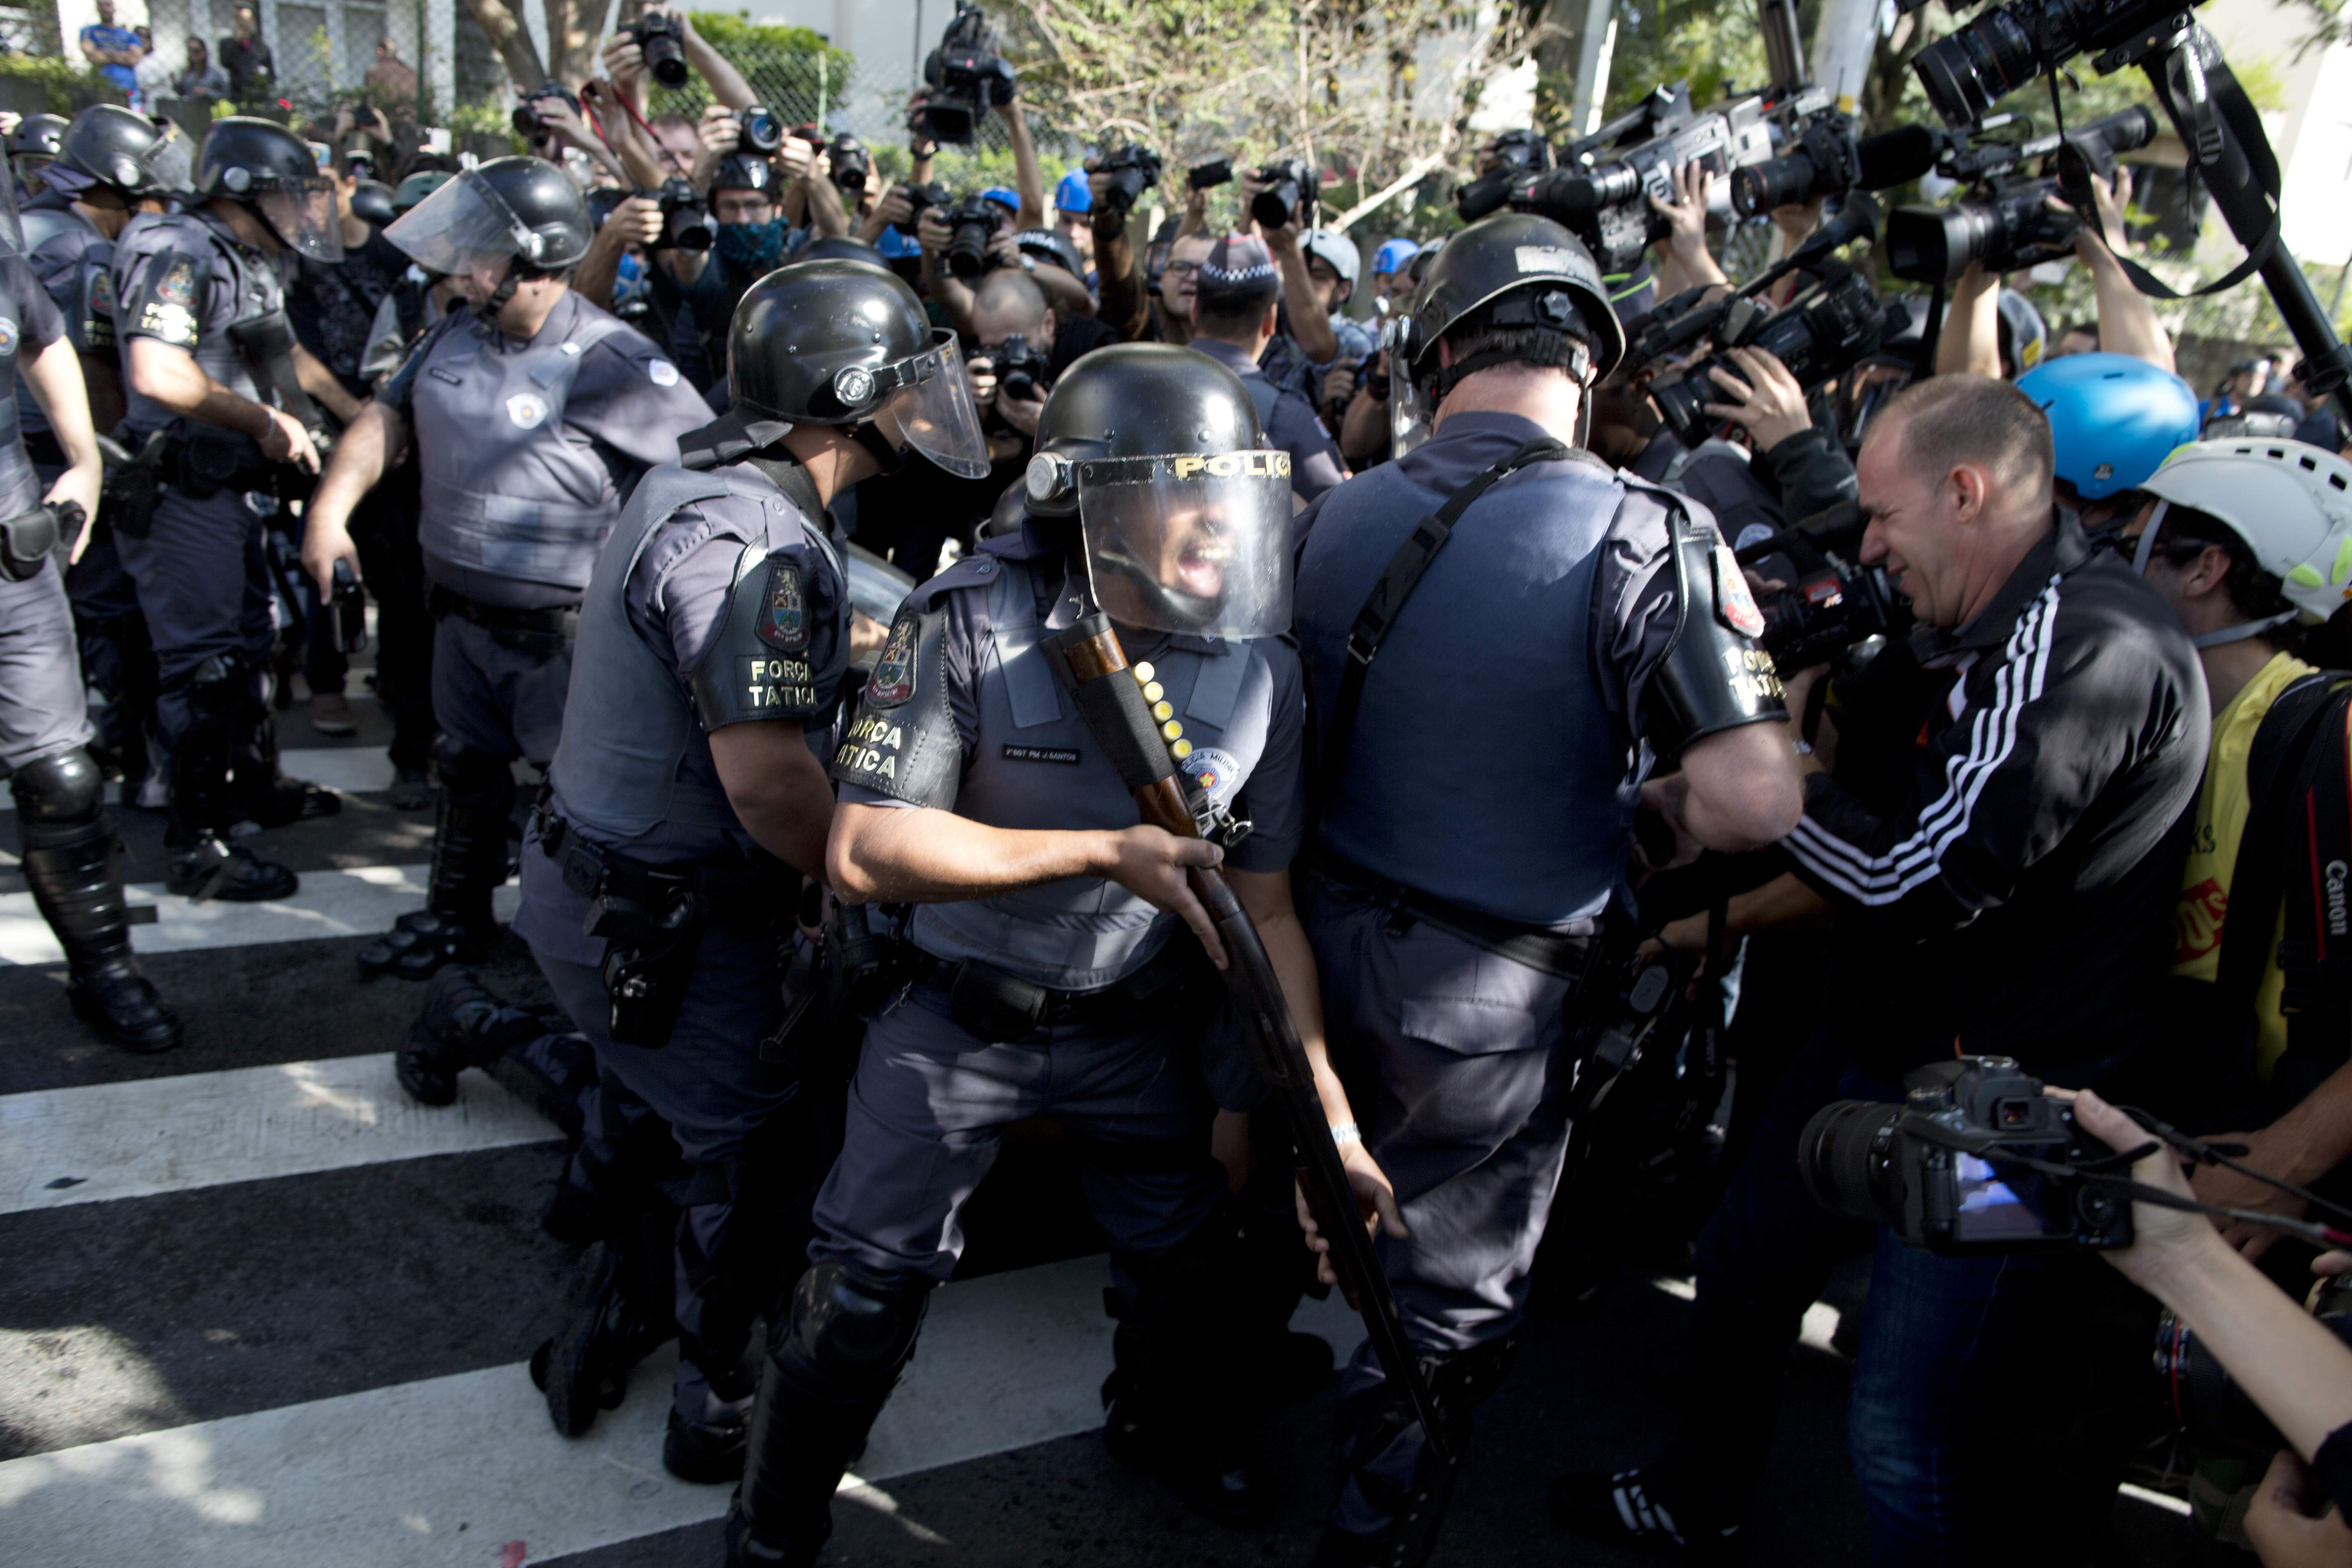 Βίαιη επέμβαση της αστυνομίας σε διαδήλωση στο Σάο Πάολο